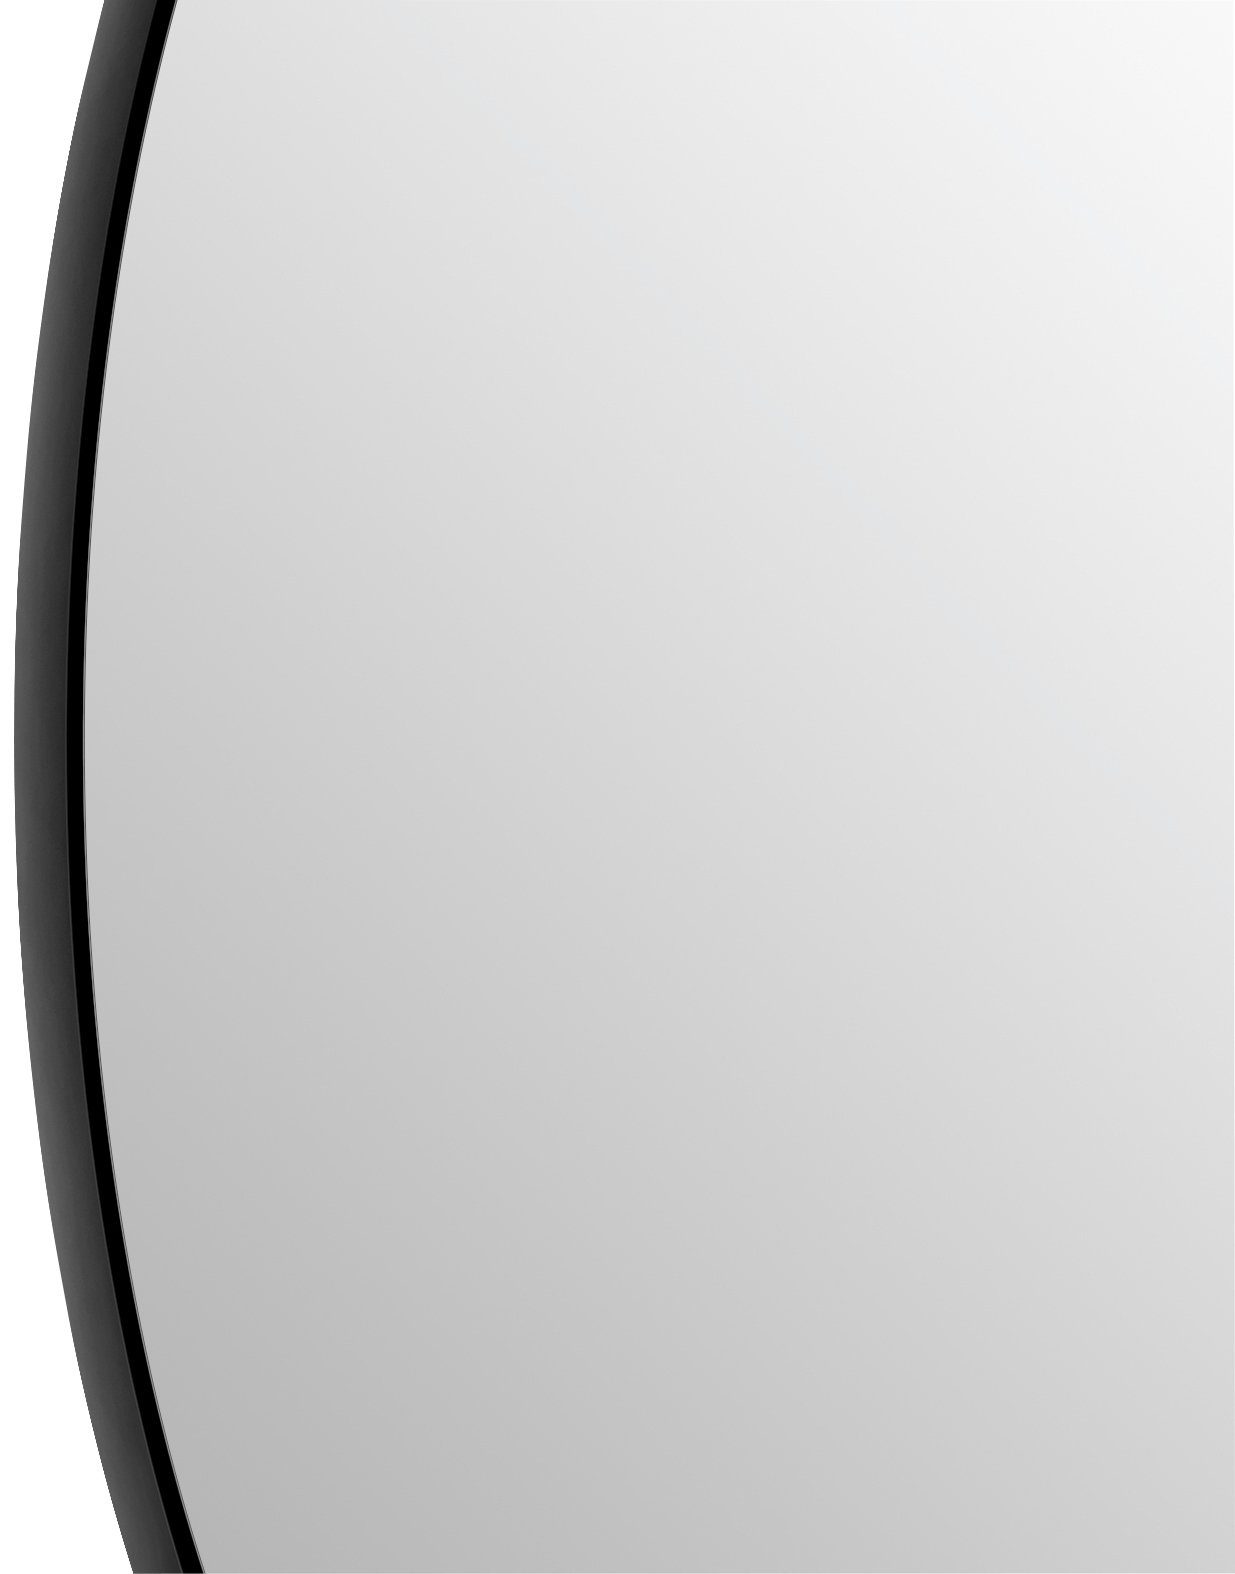 Talos LED-Lichtspiegel, rund, schwarz Beleuchtung indirekter matt mit in cm Ø 120 LED